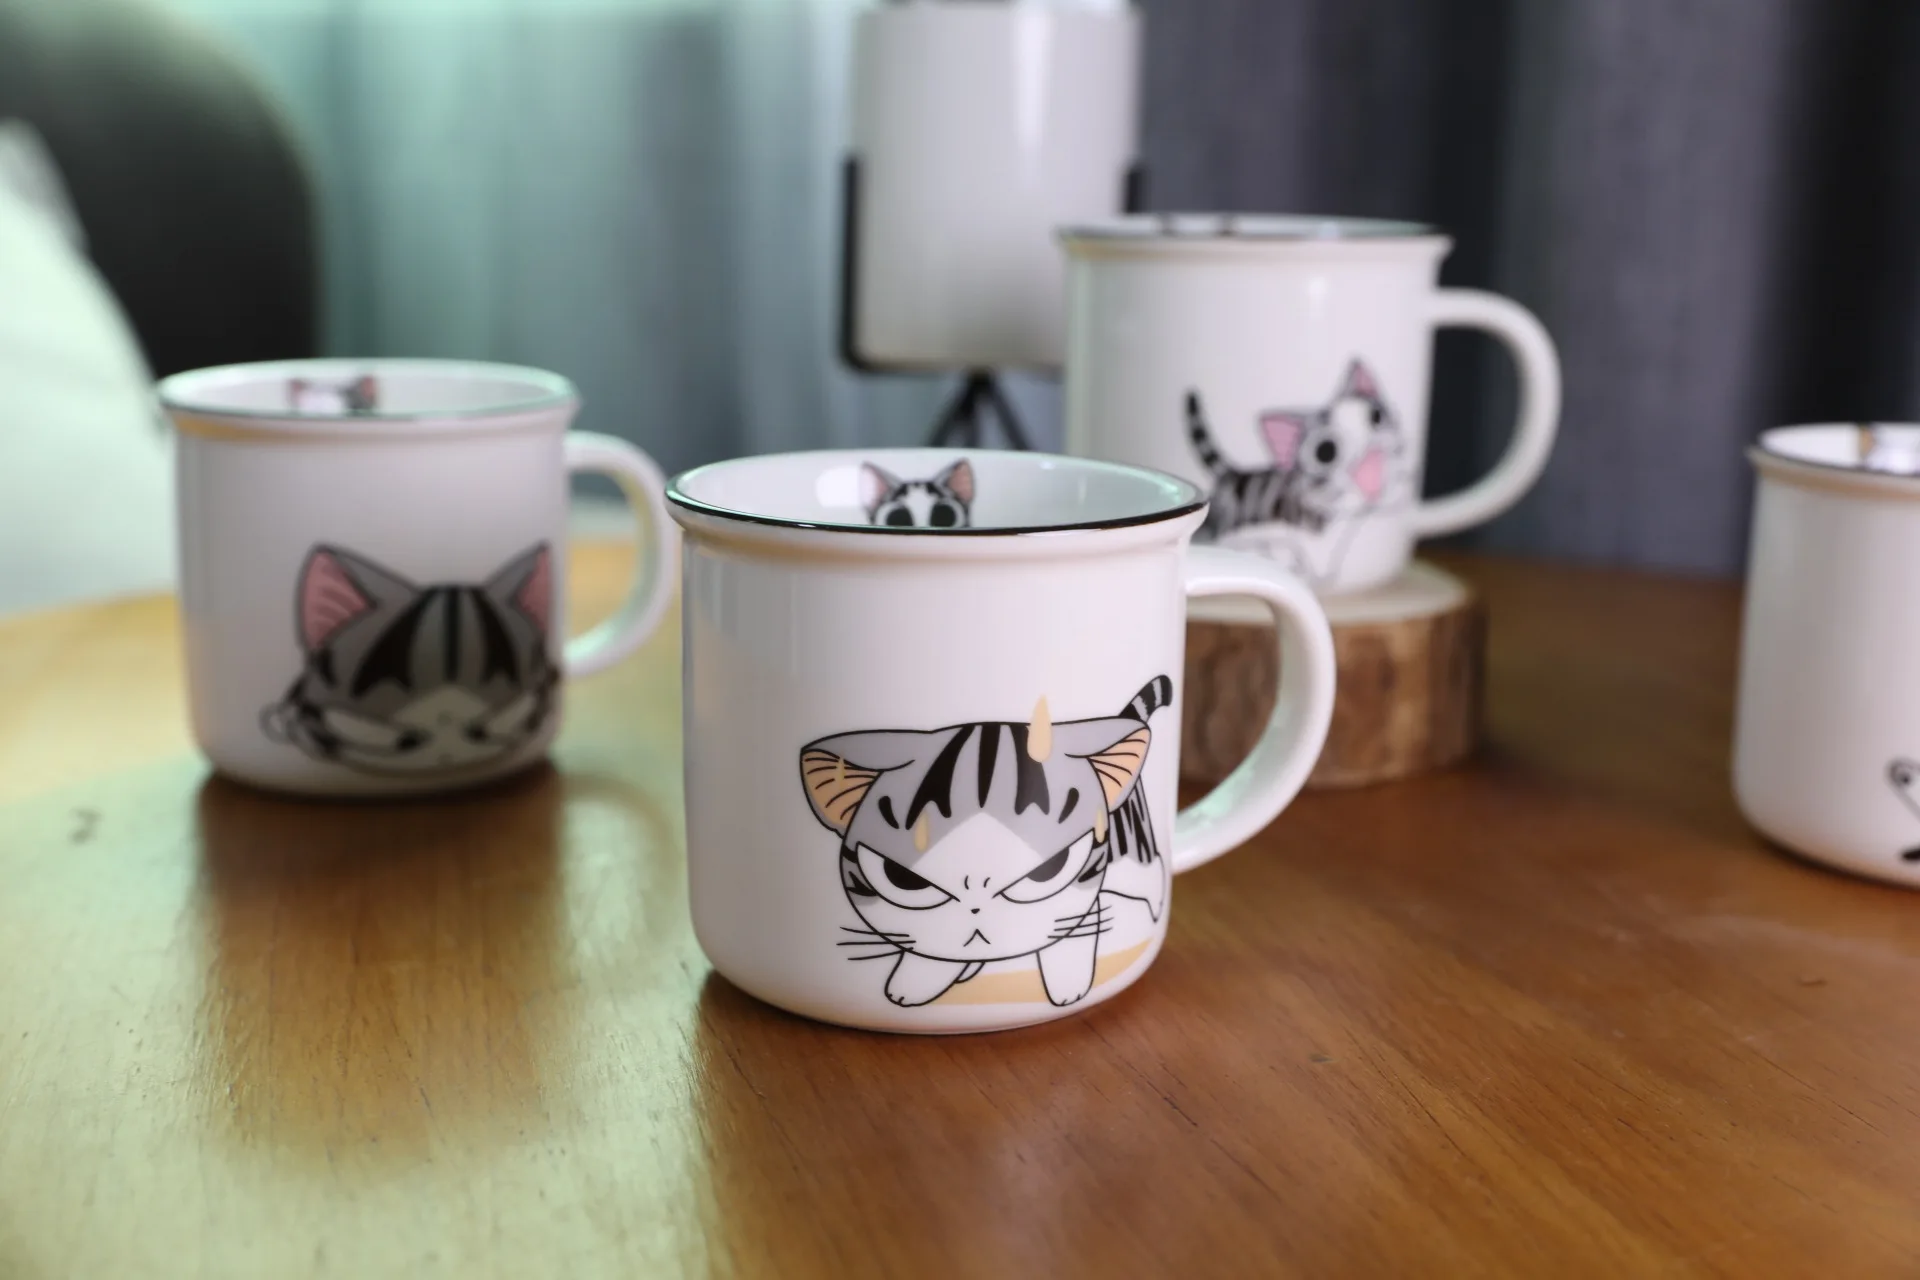 Супер милый кот животное мультфильм кофейная чашка котенок молоко кружка креативные керамические чайные кружки керамическая кружка для завтрака Новинка хорошие подарки